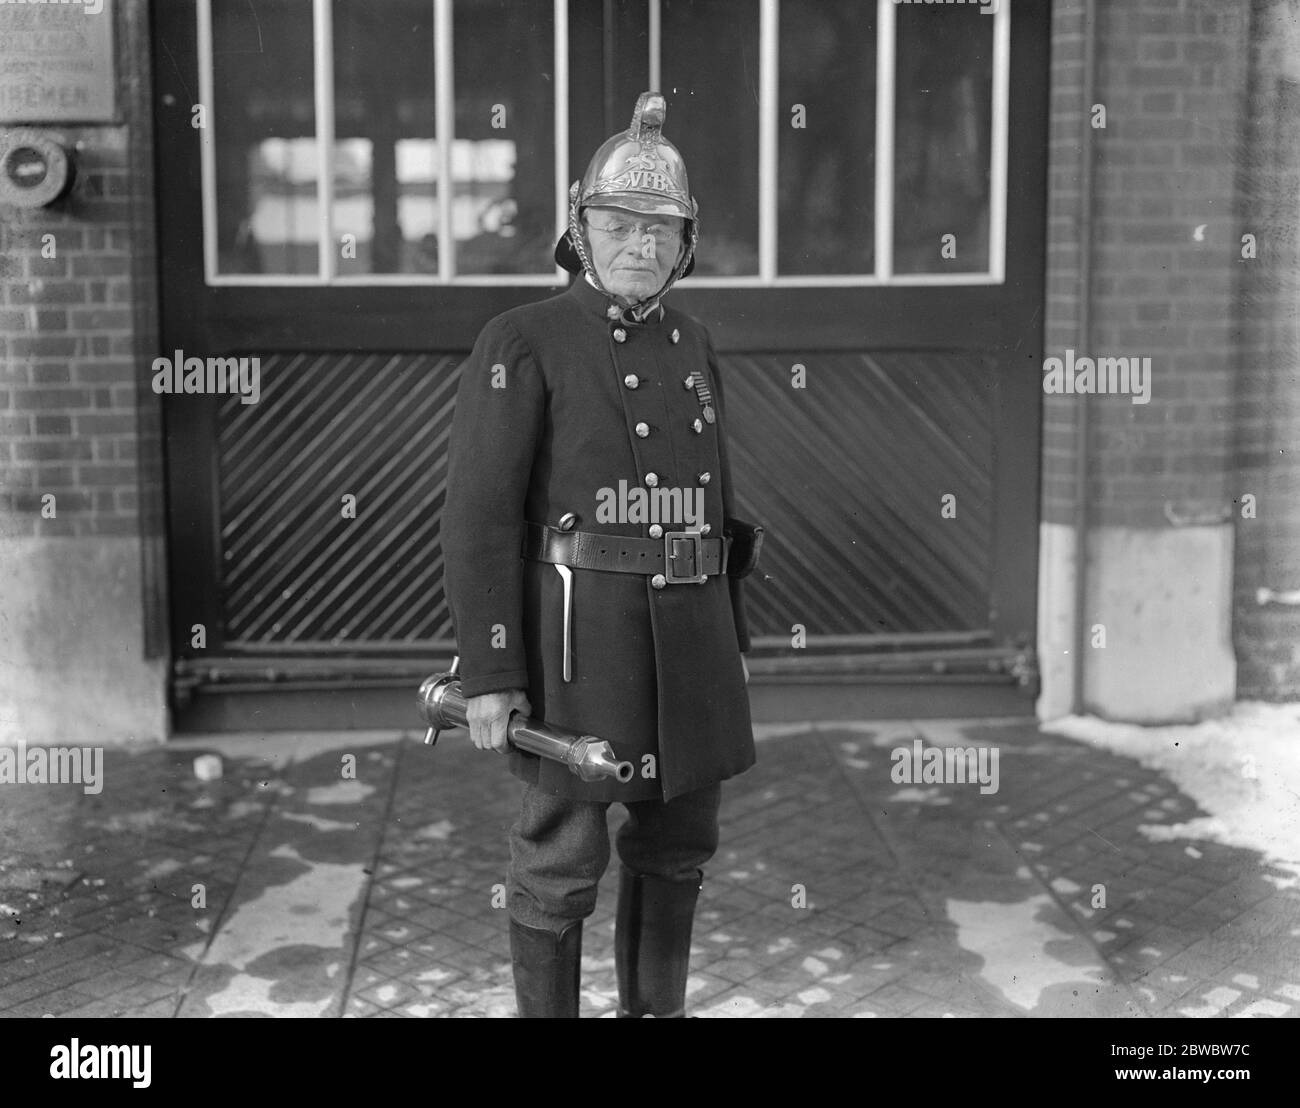 Feuerwehrmann Henry Jordan, von der Slough Freiwilligen Feuerwehr, der noch vor 81 ein sehr aktiver Feuerwehrmann ist. 18. Januar 1926 Stockfoto